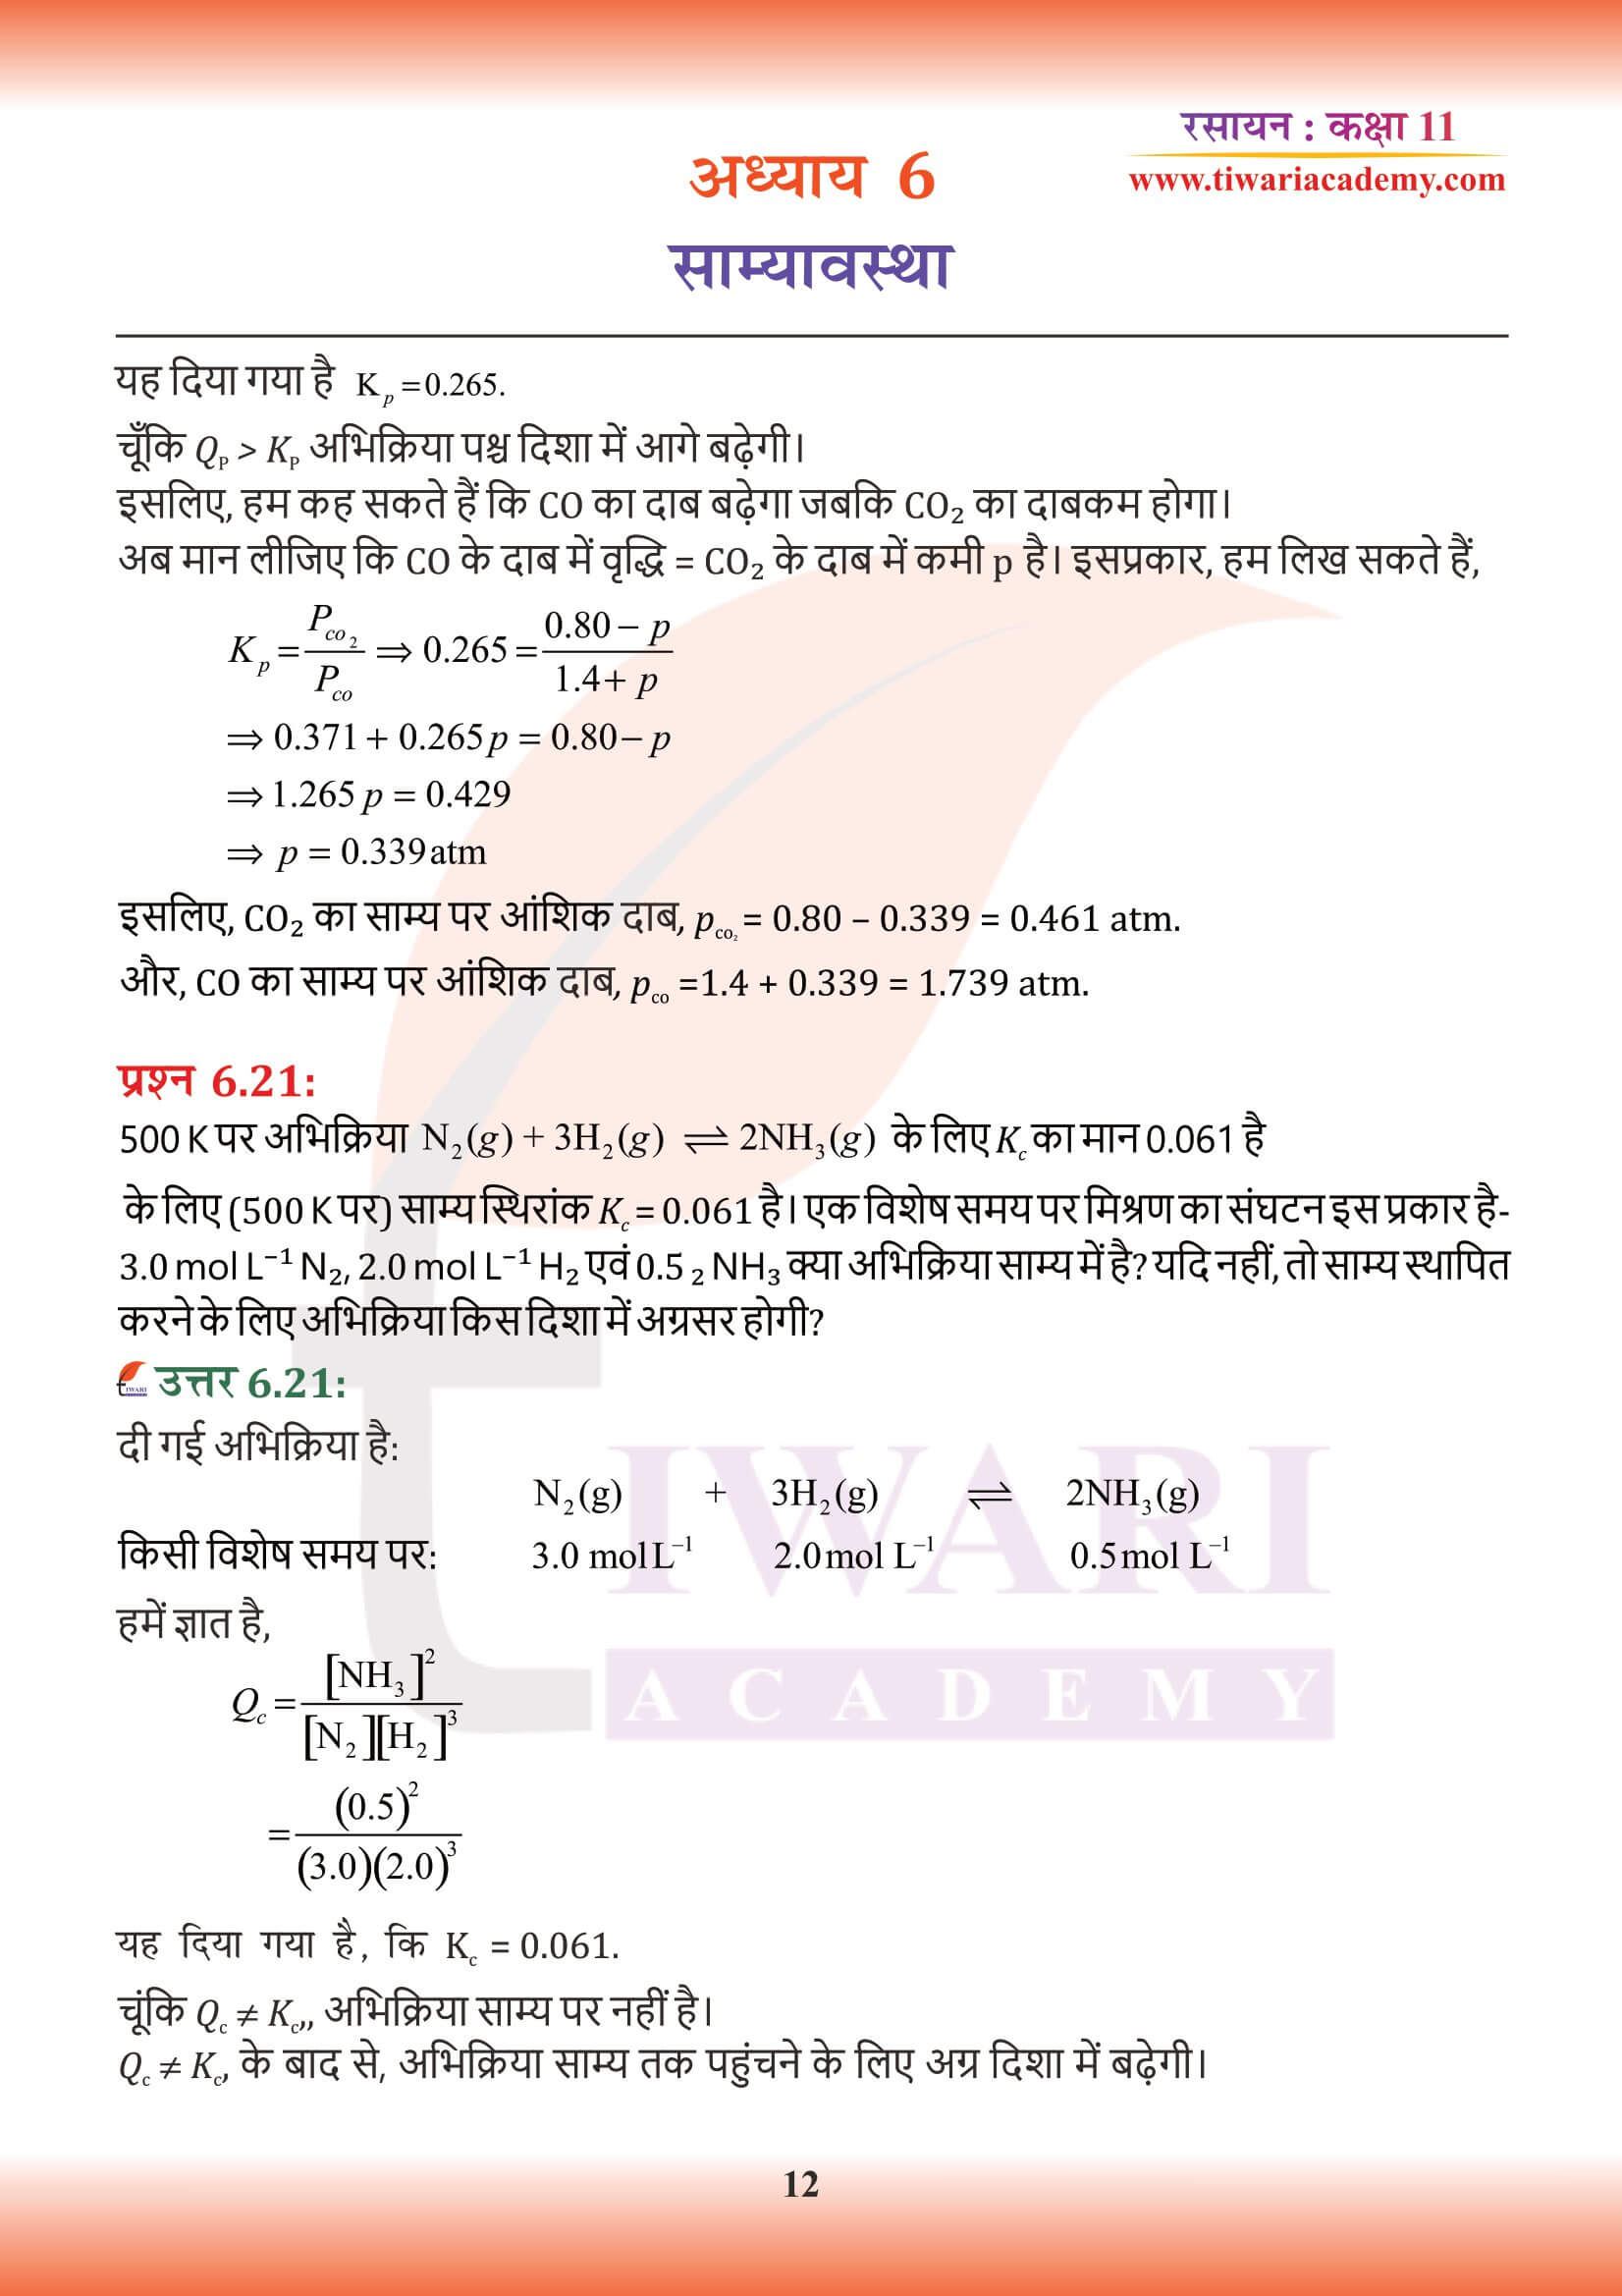 कक्षा 11 रसायन अध्याय 6 के उत्तर हिंदी में